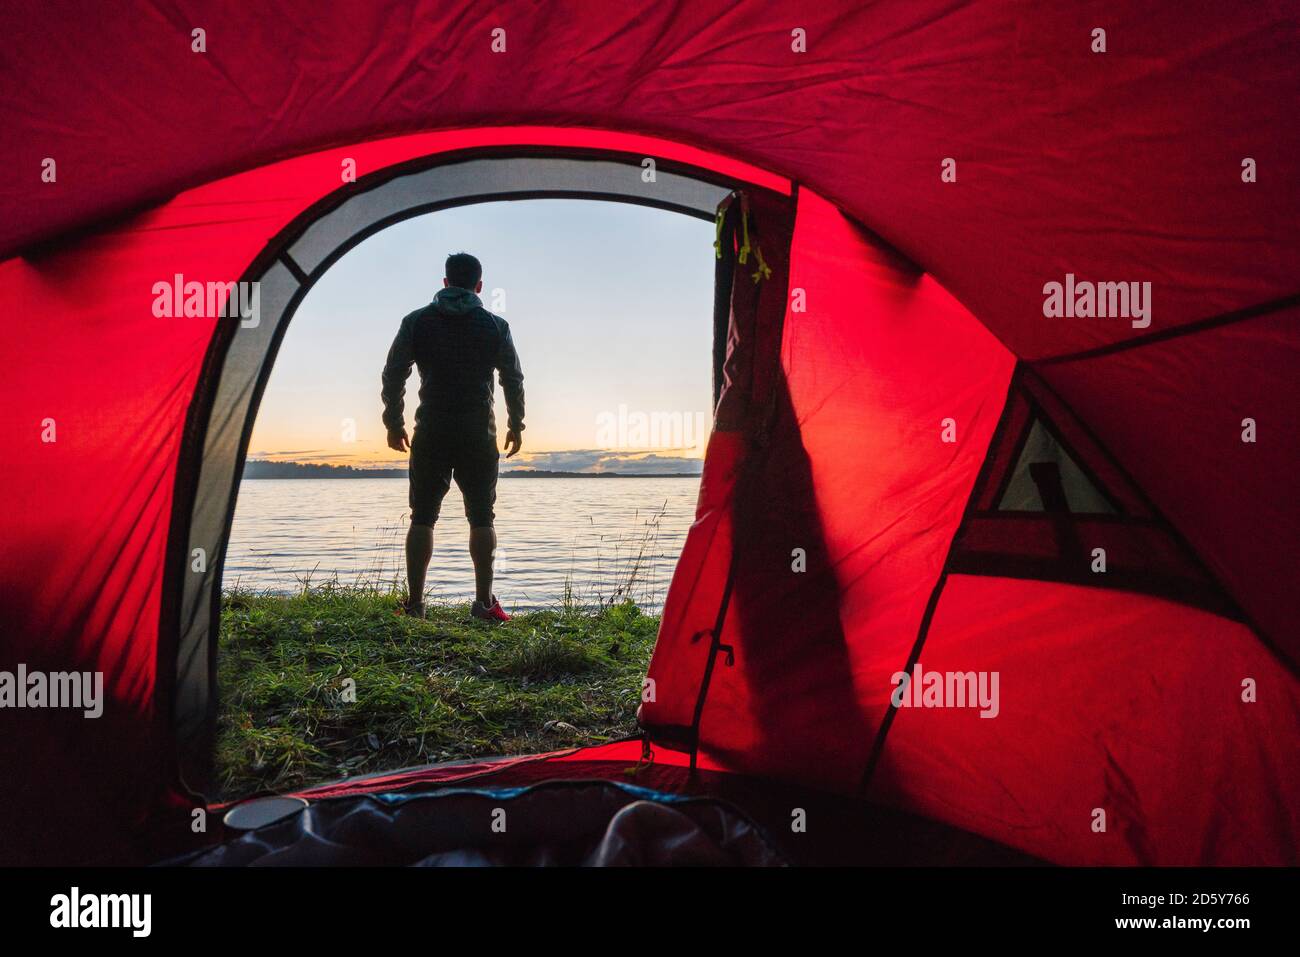 Mann, der in Estland zeltet, vor dem Zelt steht und den Sonnenuntergang beobachtet Stockfoto